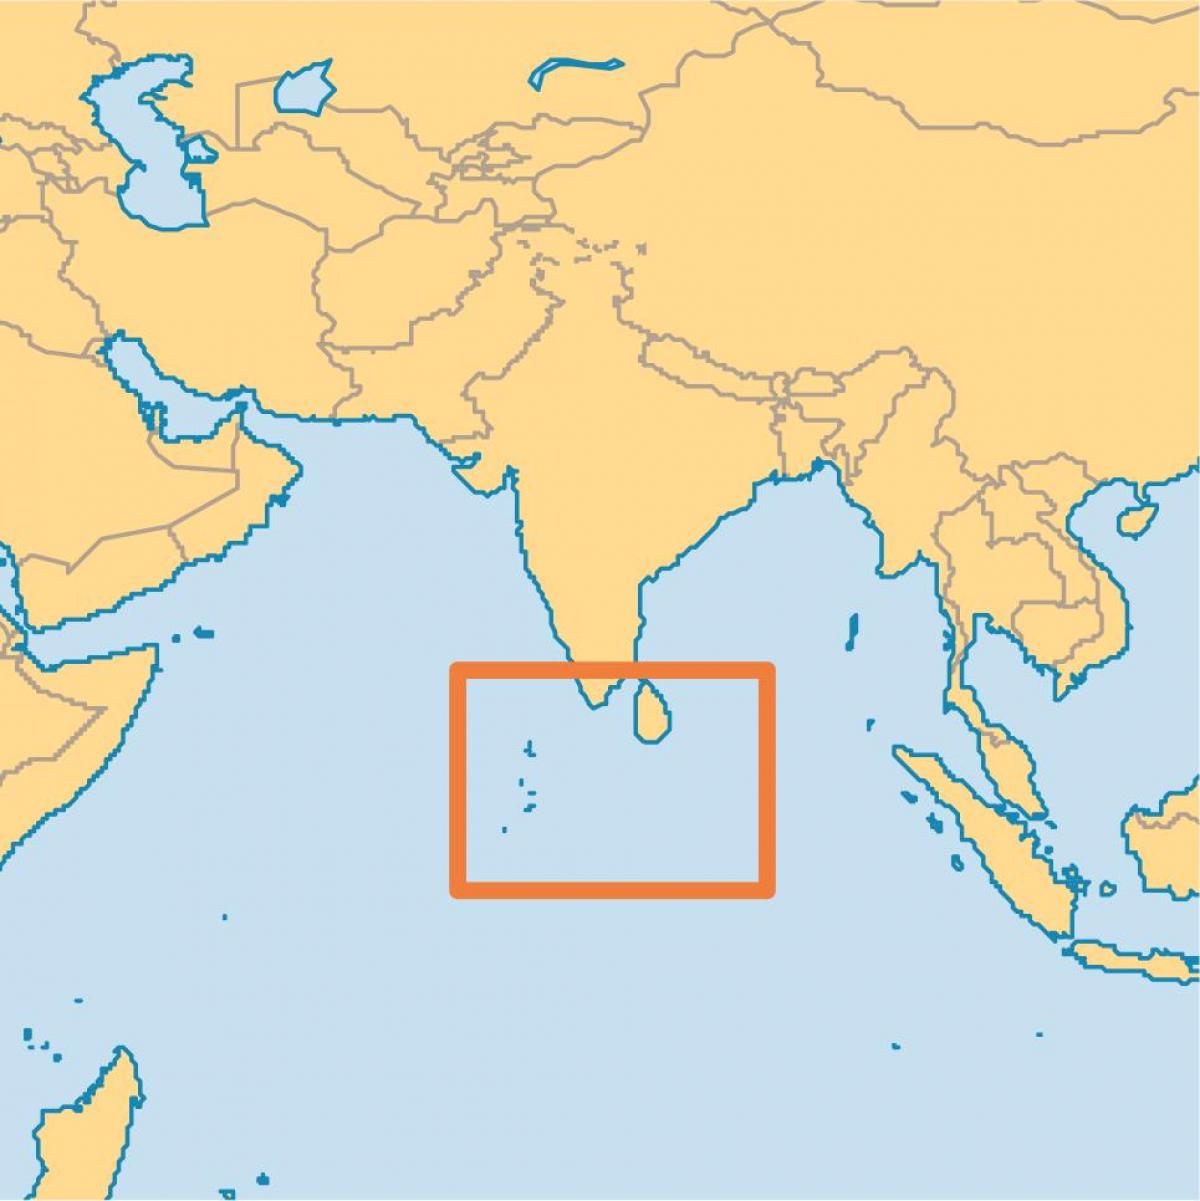 مالدیپ کے جزیرے کے مقام پر دنیا کے نقشے